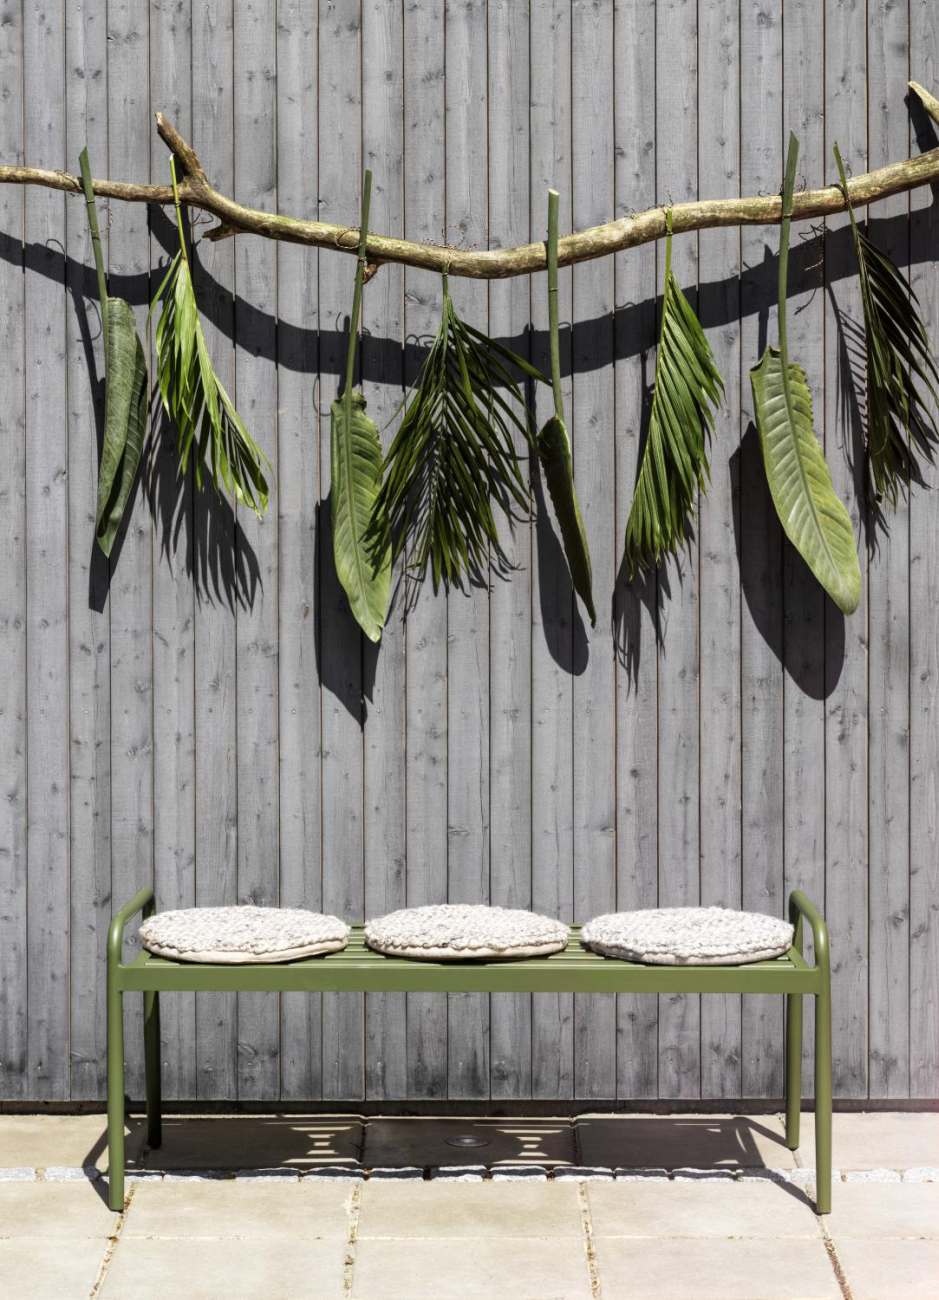 Die Gartenbank Sonnac überzeugt mit ihrem modernen Design. Gefertigt wurde sie aus Metall, welches einen grünen Farbton besitzt. Das Gestell ist auch aus Metall. Die Sitzhöhe der Bank beträgt 43 cm.